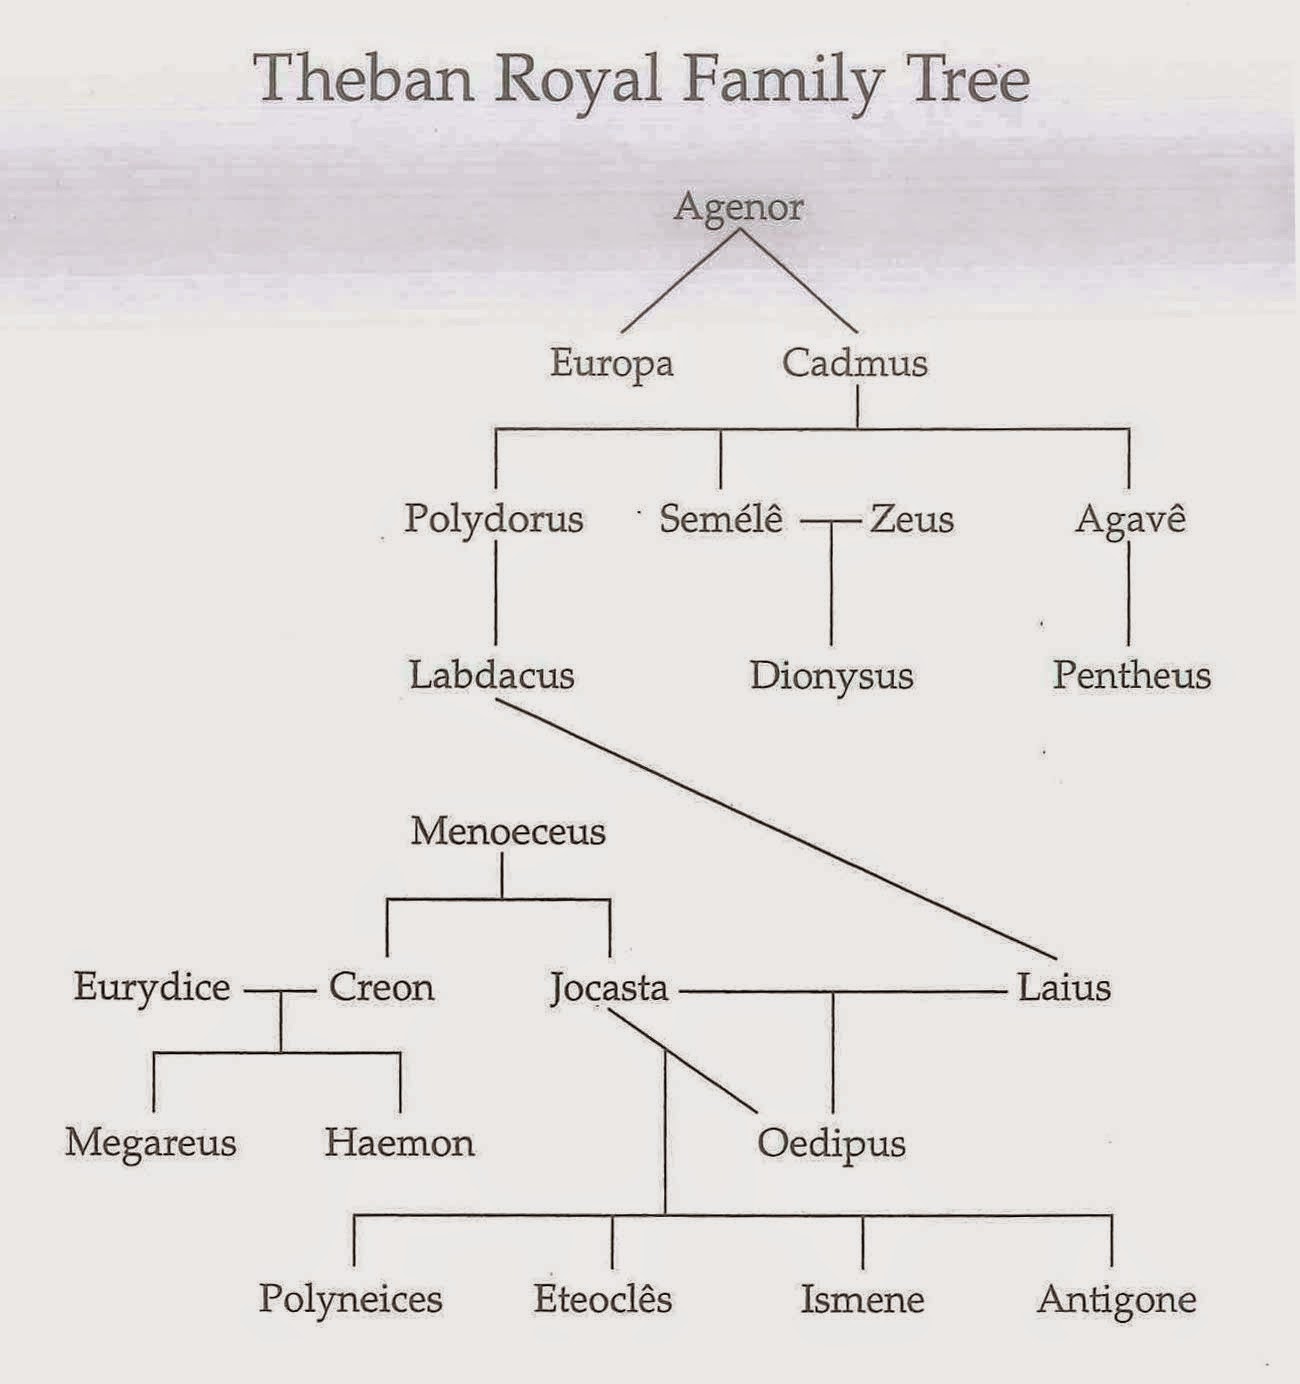 oedipus-antigone-family-tree-josema1987